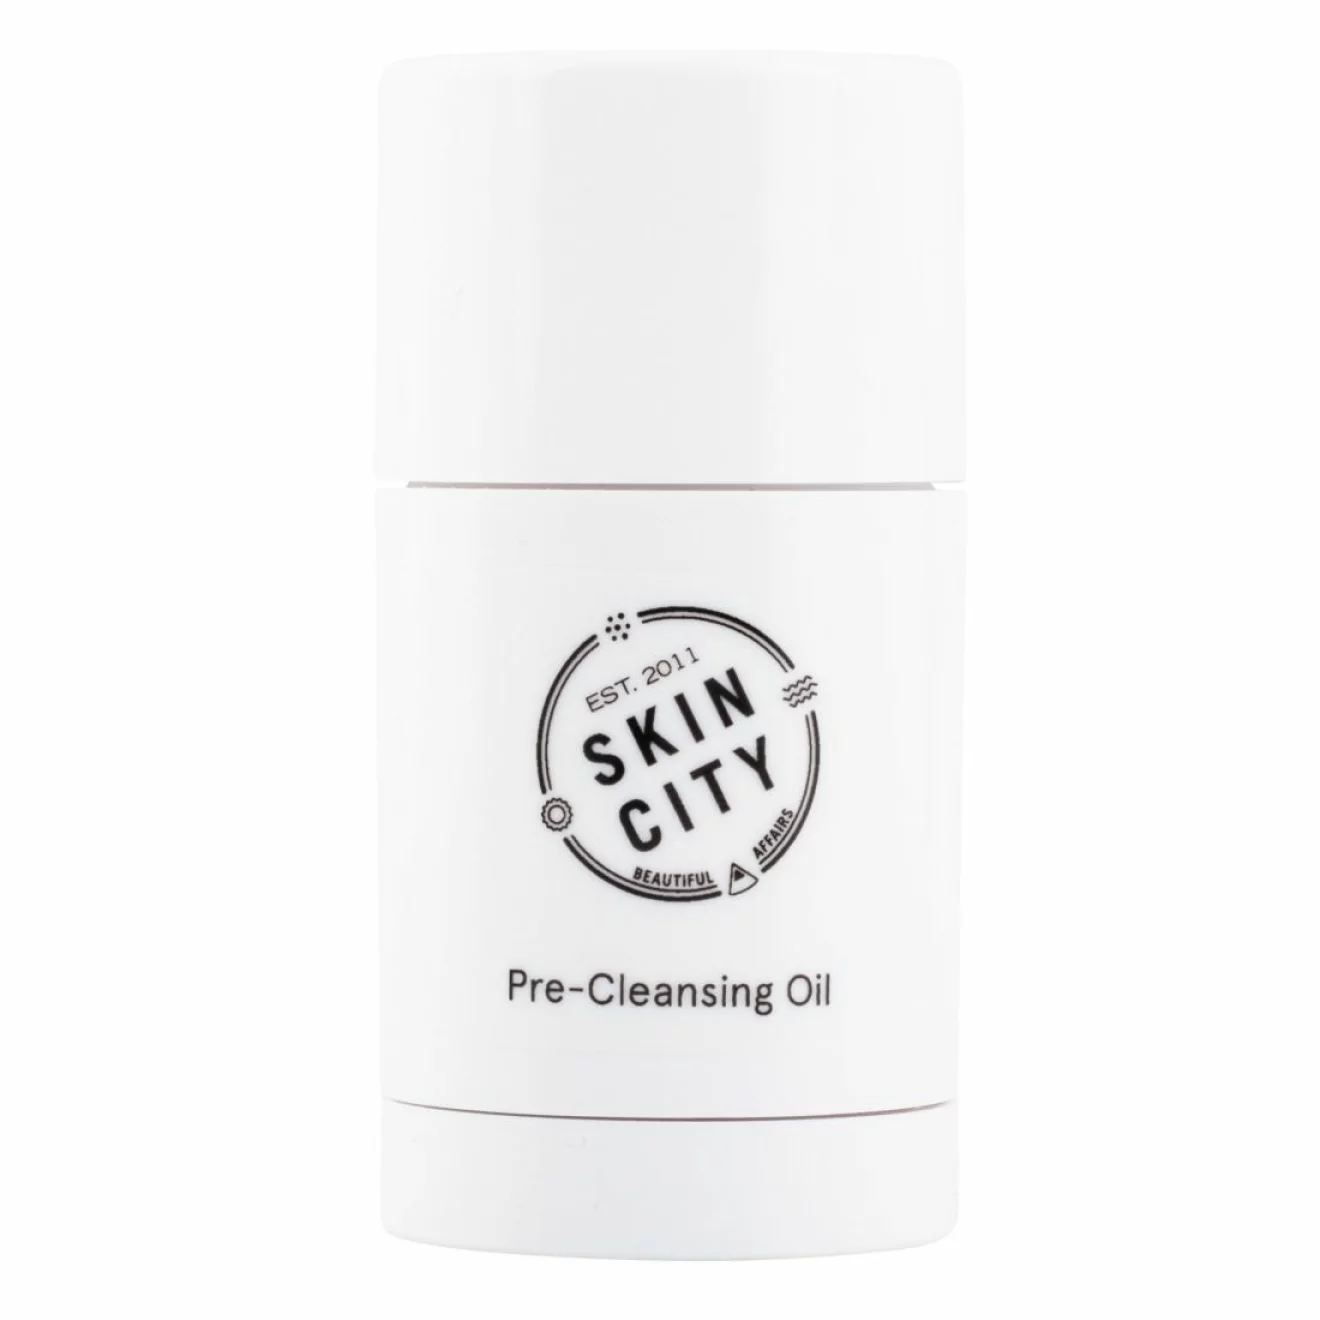 Pre-cleansing oil från Skincity är en micellär rengöring i stiftformat som smälter till olja i kontakt med hud.